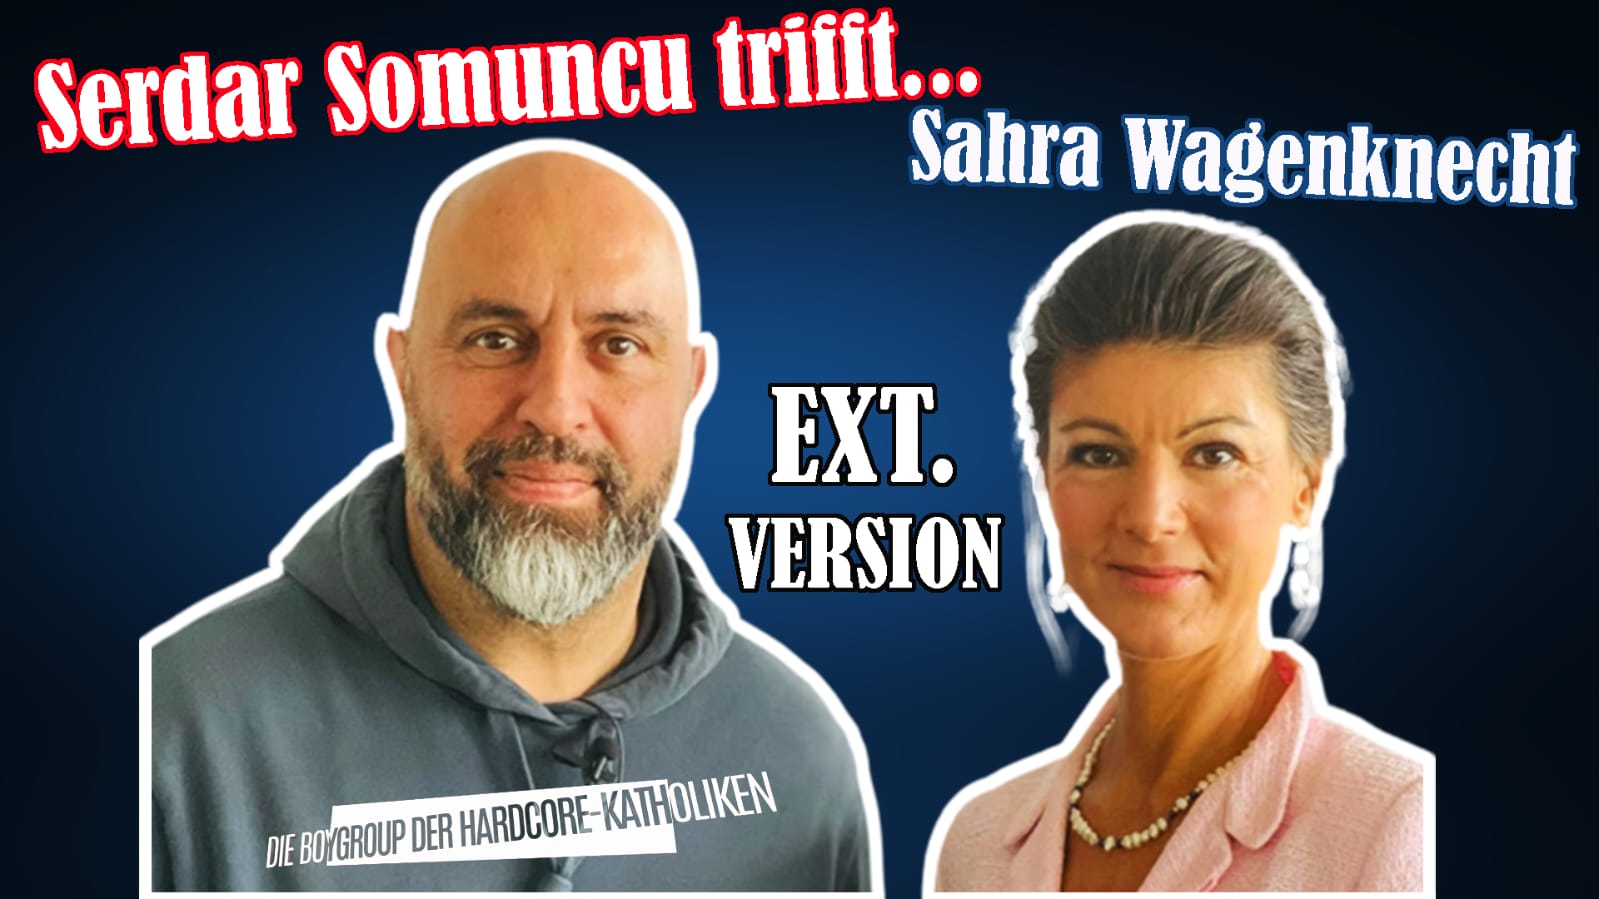 Serdar Somuncu und Sahra Wagenknecht über Ukraine, Corona, rechts und links (Shop Art-No. Serdar-Somuncu-und-Sahra-Wagenknecht) | Serdar Somuncu